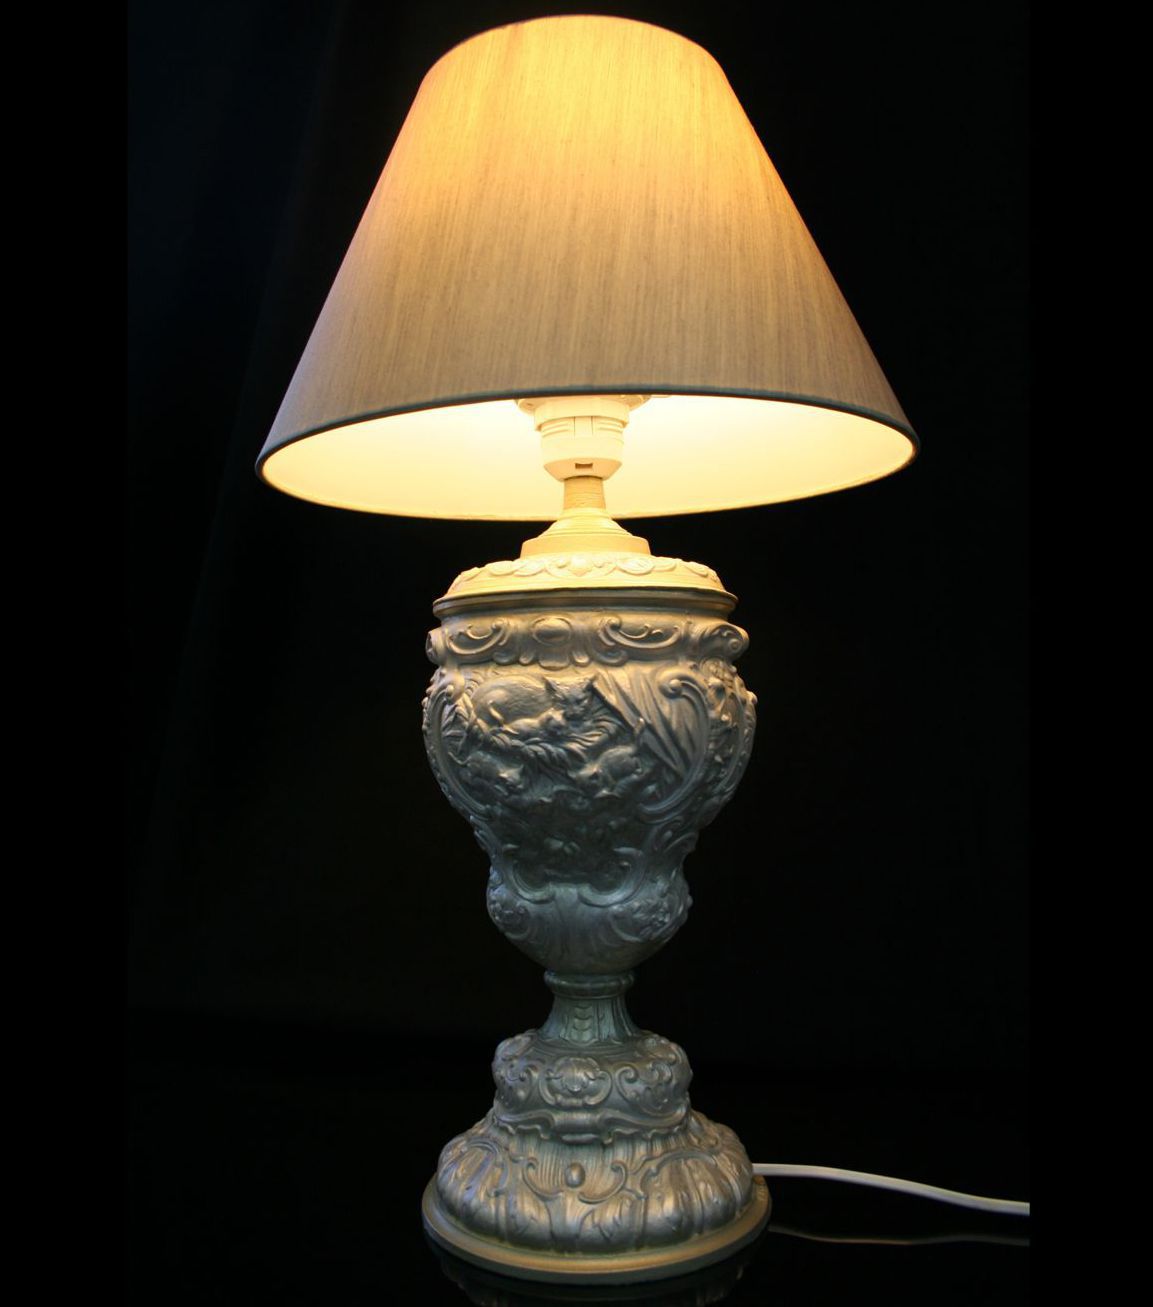 спальню абажуром работа работы ручной эксклюзив авторский светильник лампа дизайн абажур для ручная детскую дома новоселье подарок антиквариат